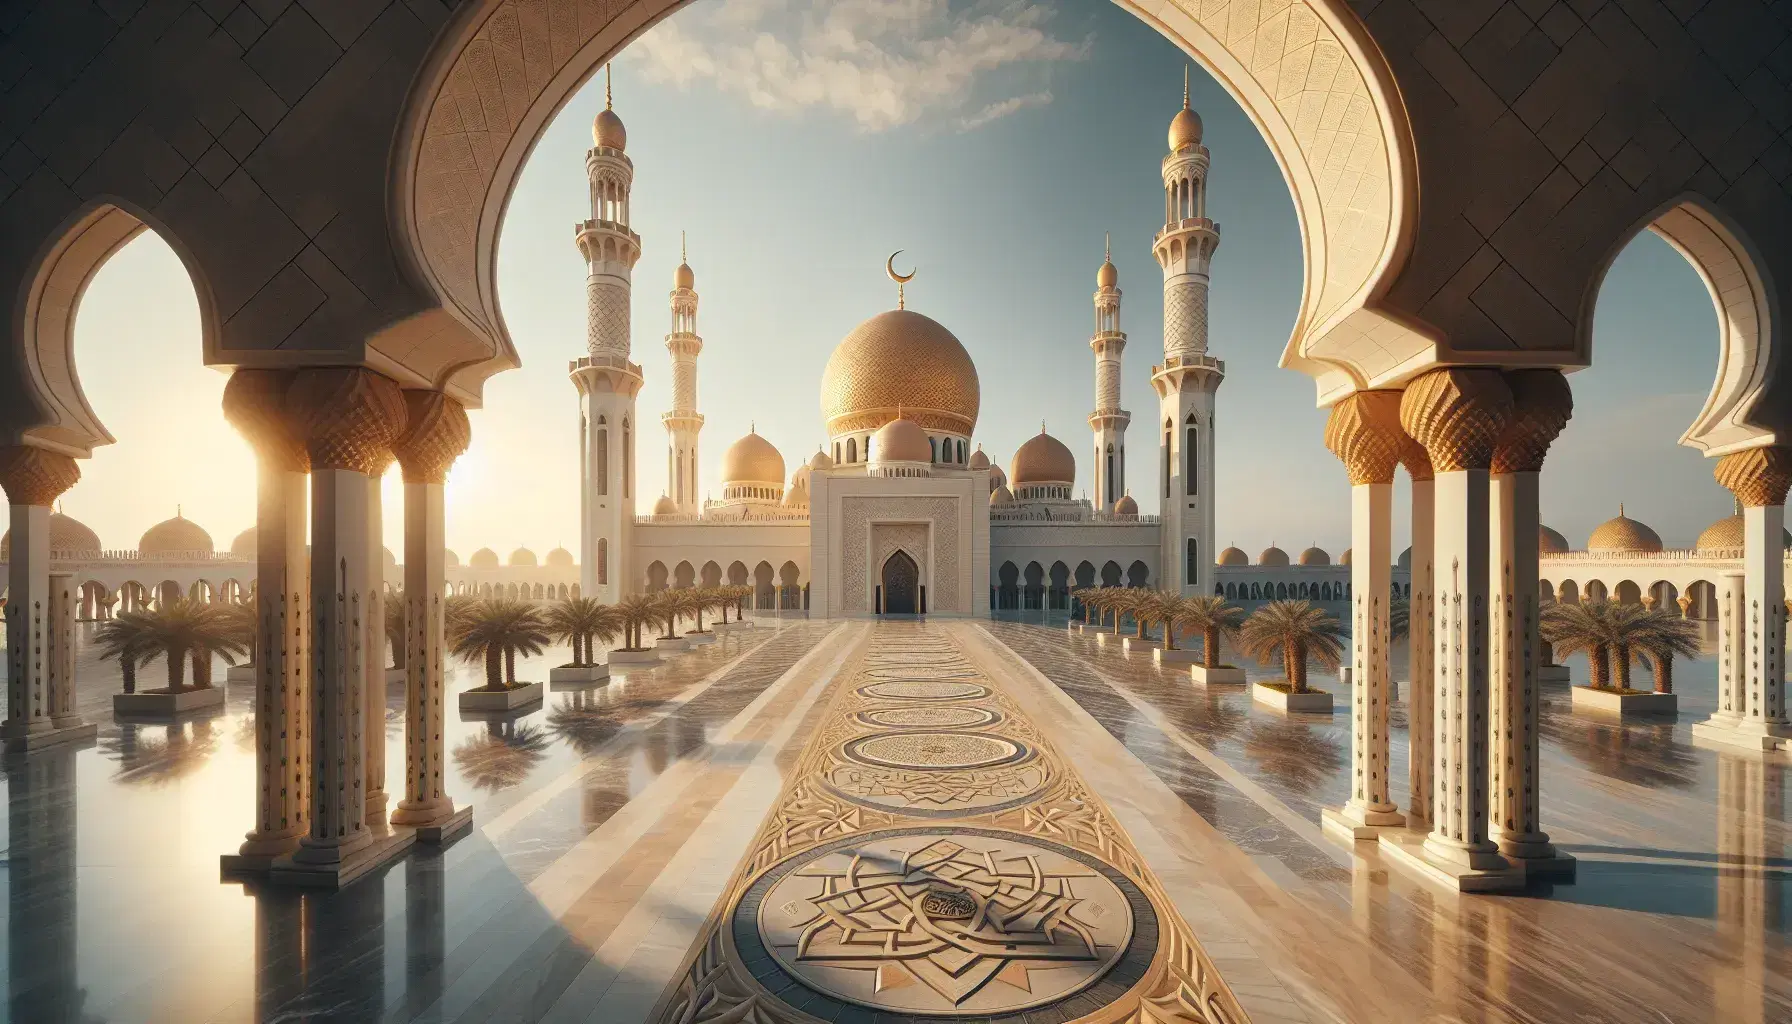 Mezquita de arquitectura islámica con cúpula dorada, minaretes con lunas crecientes, patio de mármol y palmeras bajo un cielo azul despejado.